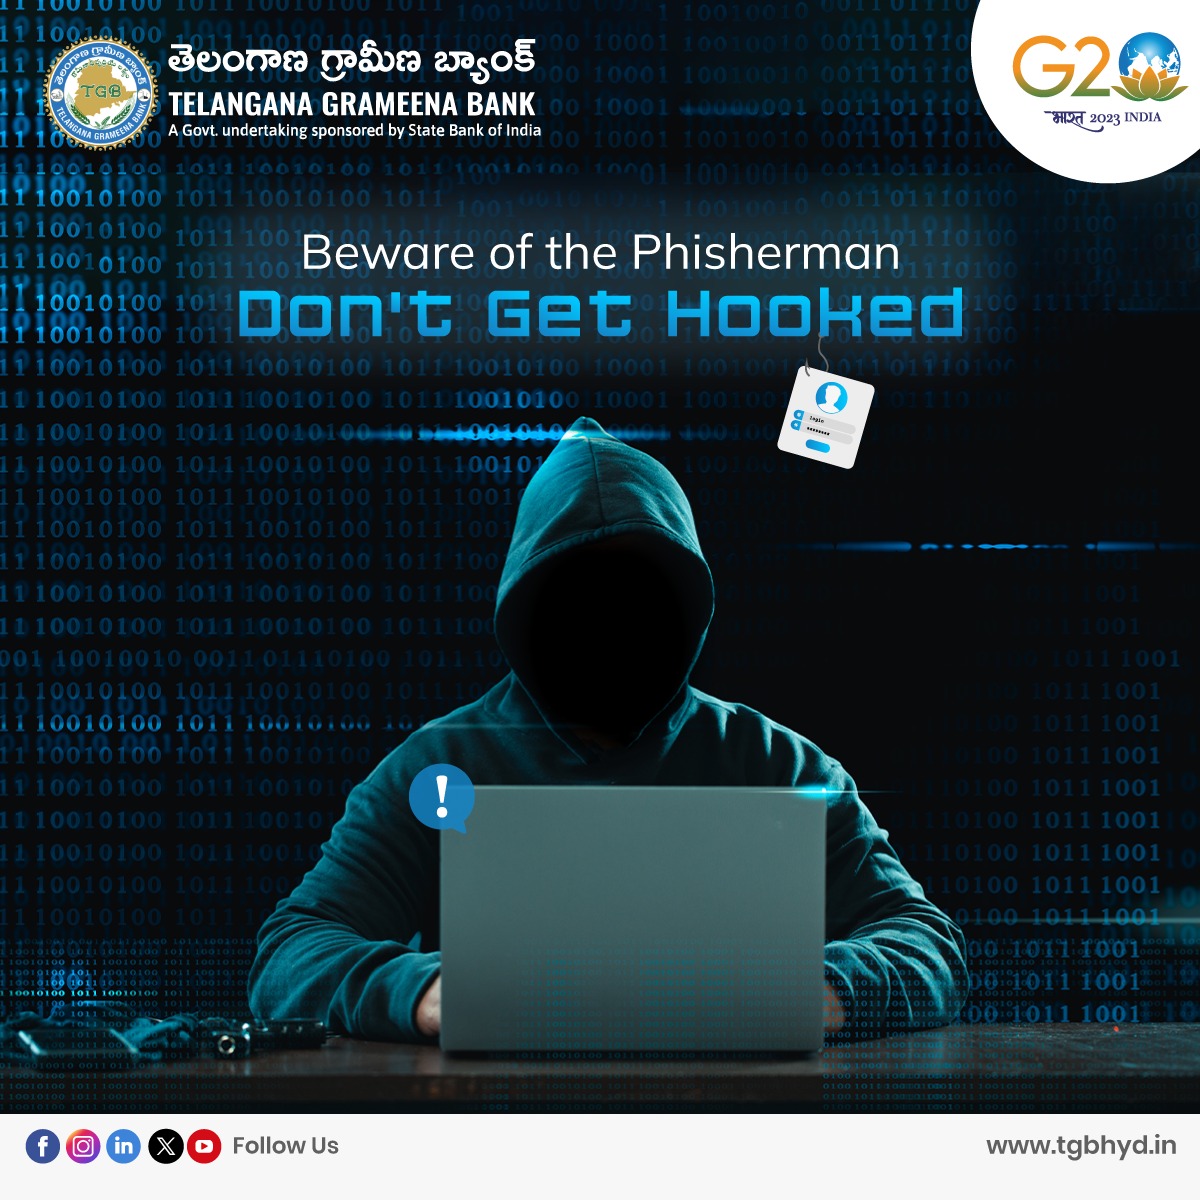 Beware of Phishing... Don't Get Hooked

#phishingscam #Phising #phishingemail #Phishing #G20Summitindia #G20Summit2023 #g20 #g20summit #SBI #sbi #tgbcares #tgbtalks